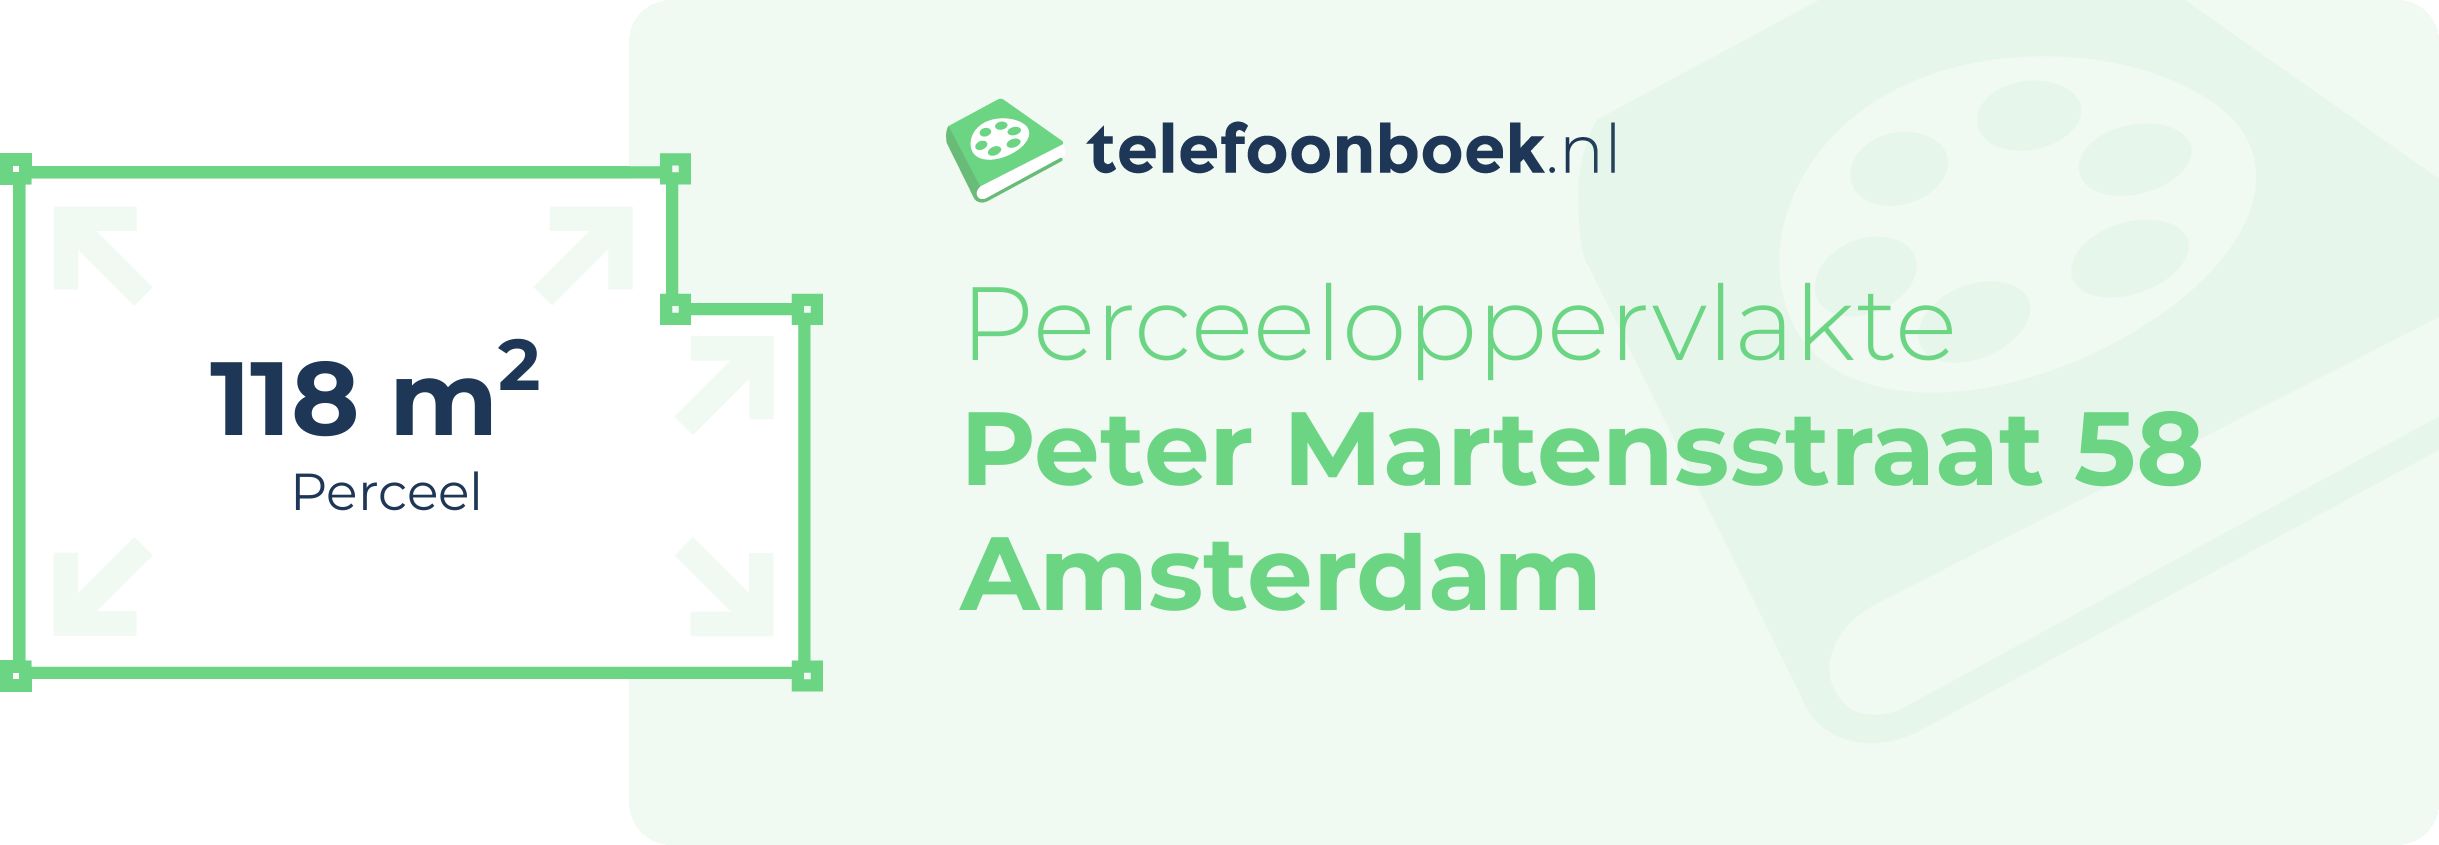 Perceeloppervlakte Peter Martensstraat 58 Amsterdam